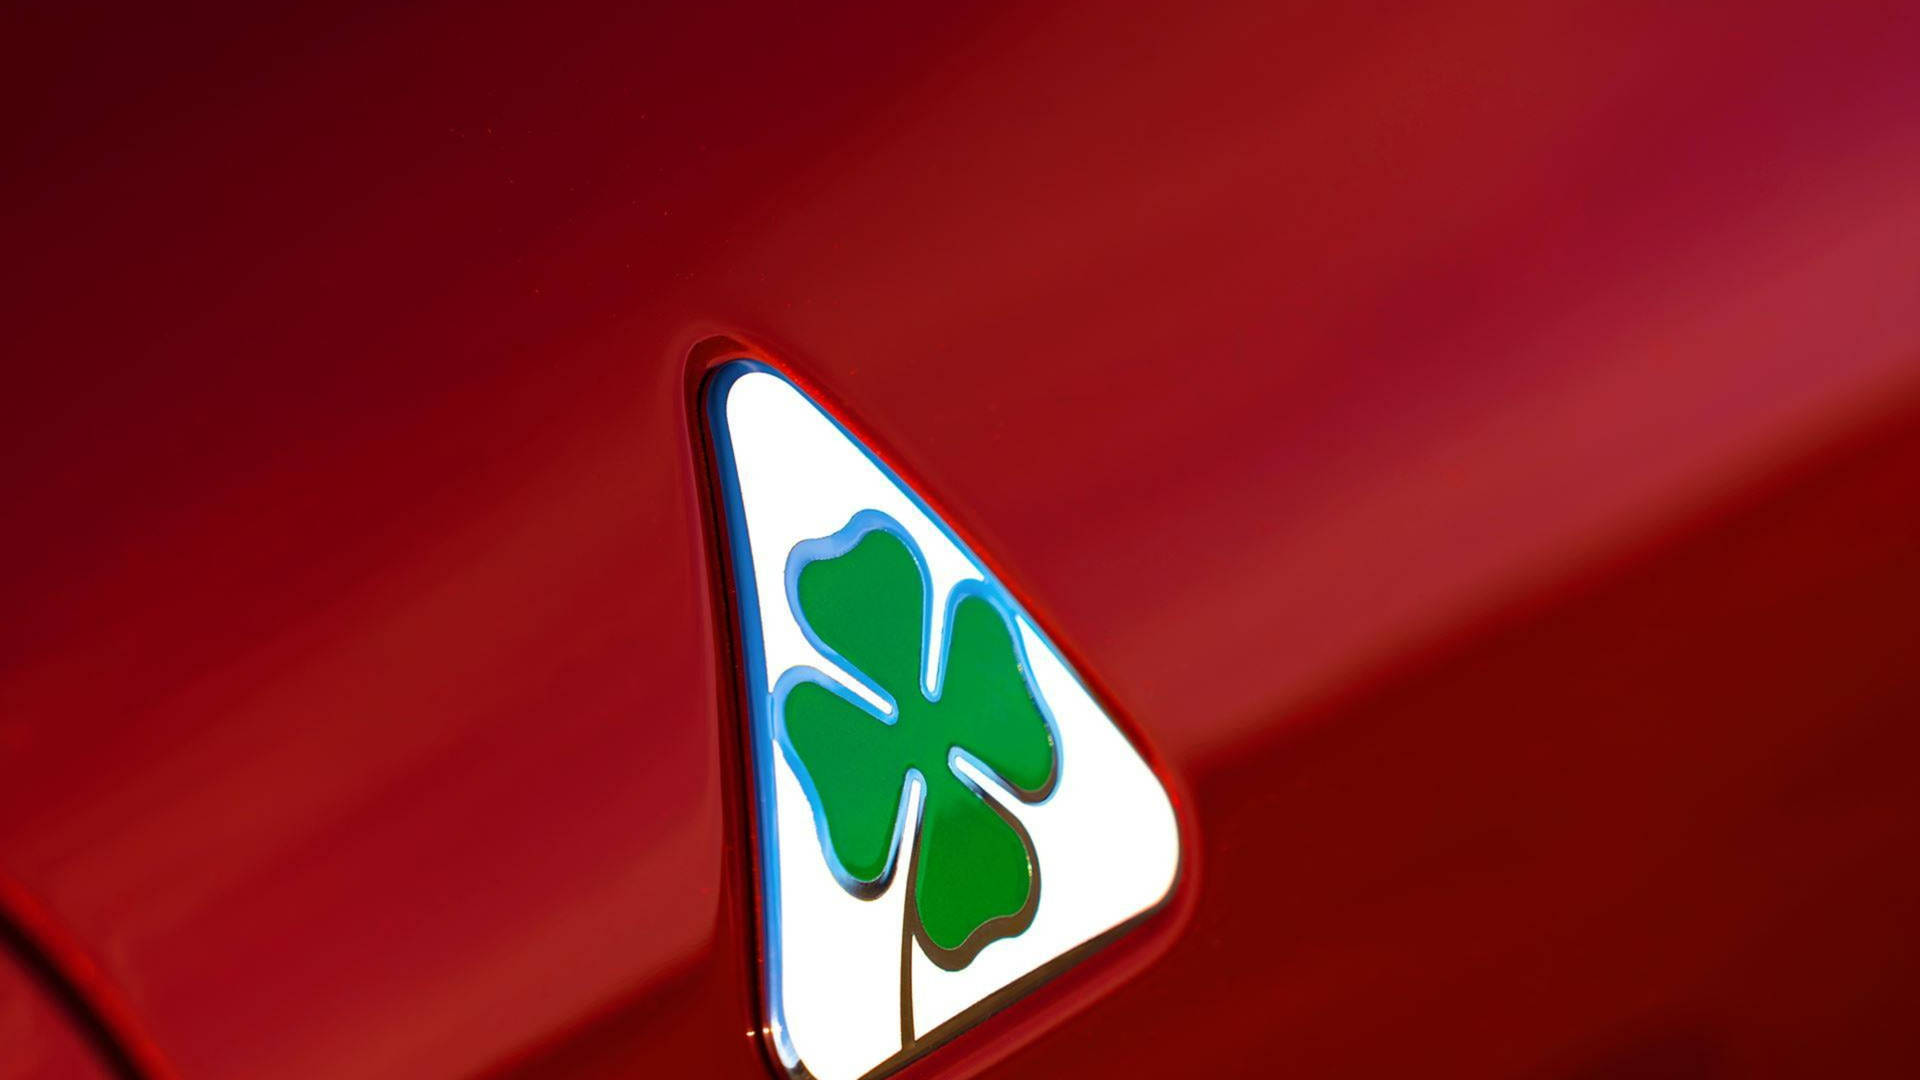 Alfa Romeo Quadrifoglio Symbol Picture